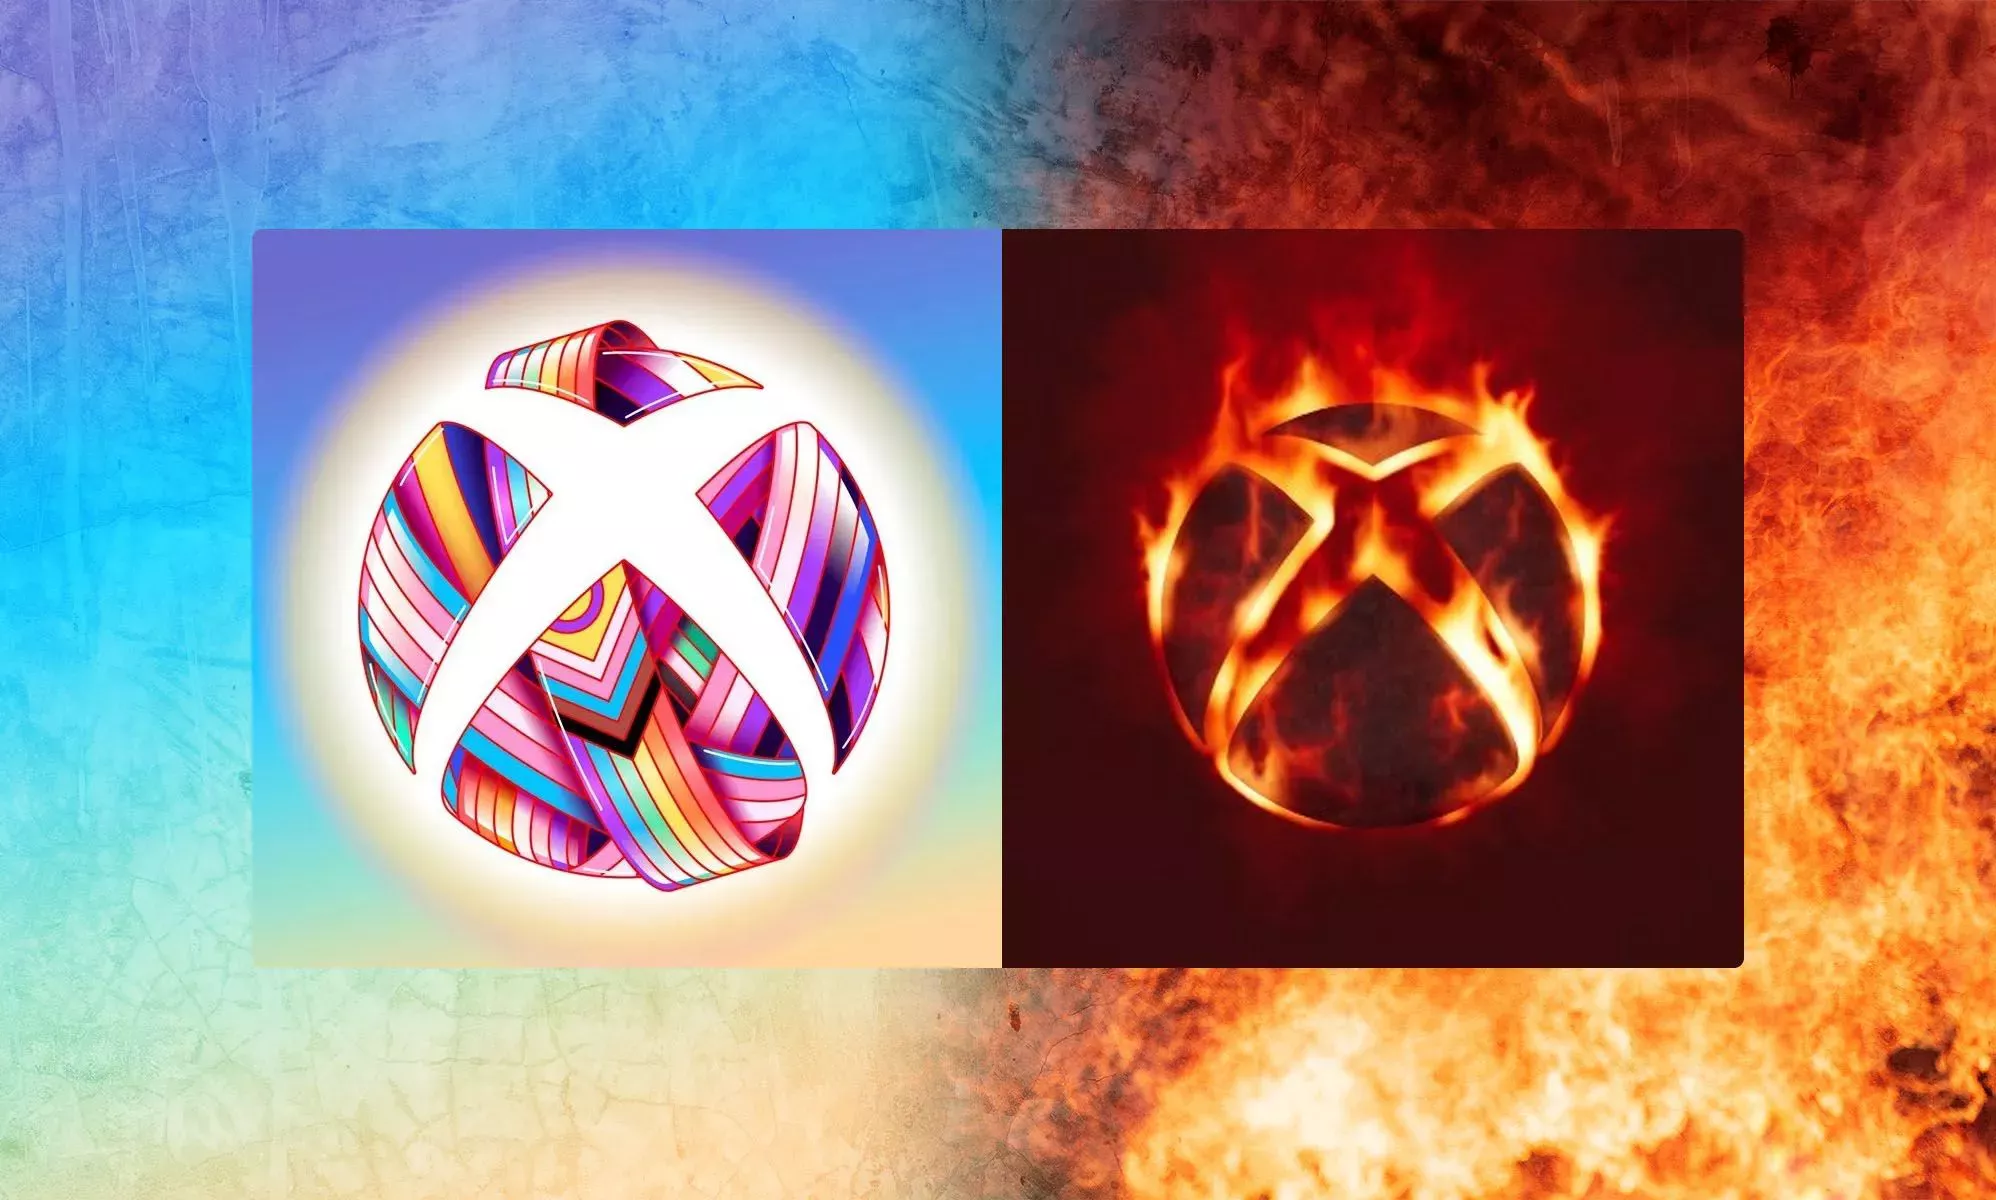 Xbox provoca una reacción violenta tras cambiar el logotipo del Mes del Orgullo por las llamas del infierno